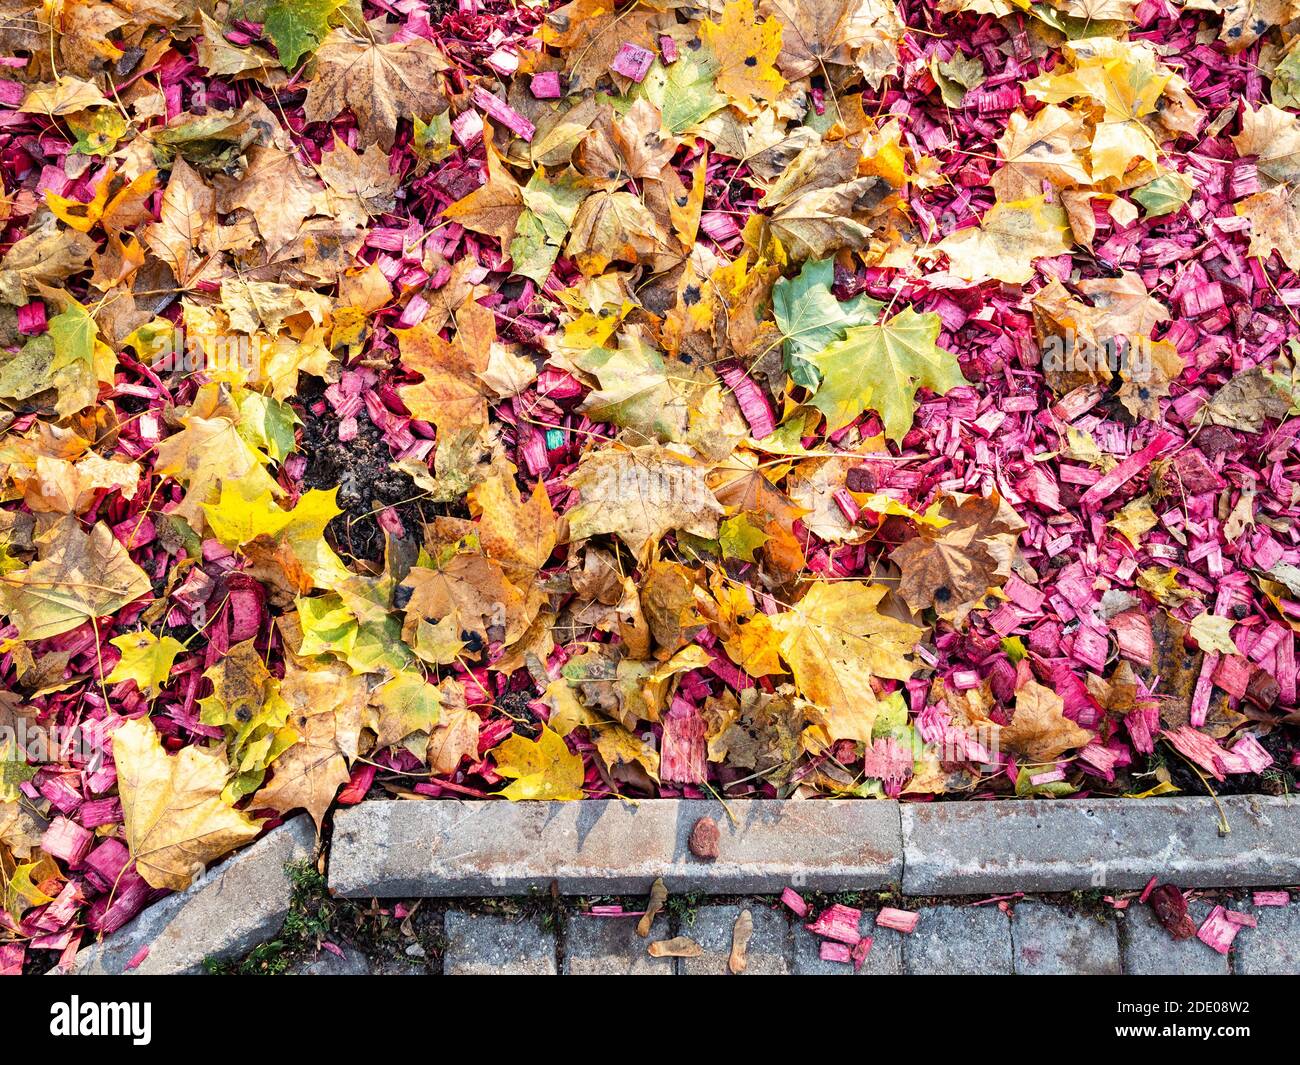 Draufsicht auf bunte gefallene Ahornblätter und rosa Holz Mulch auf  städtischen Rasen im Herbst Tag Stockfotografie - Alamy